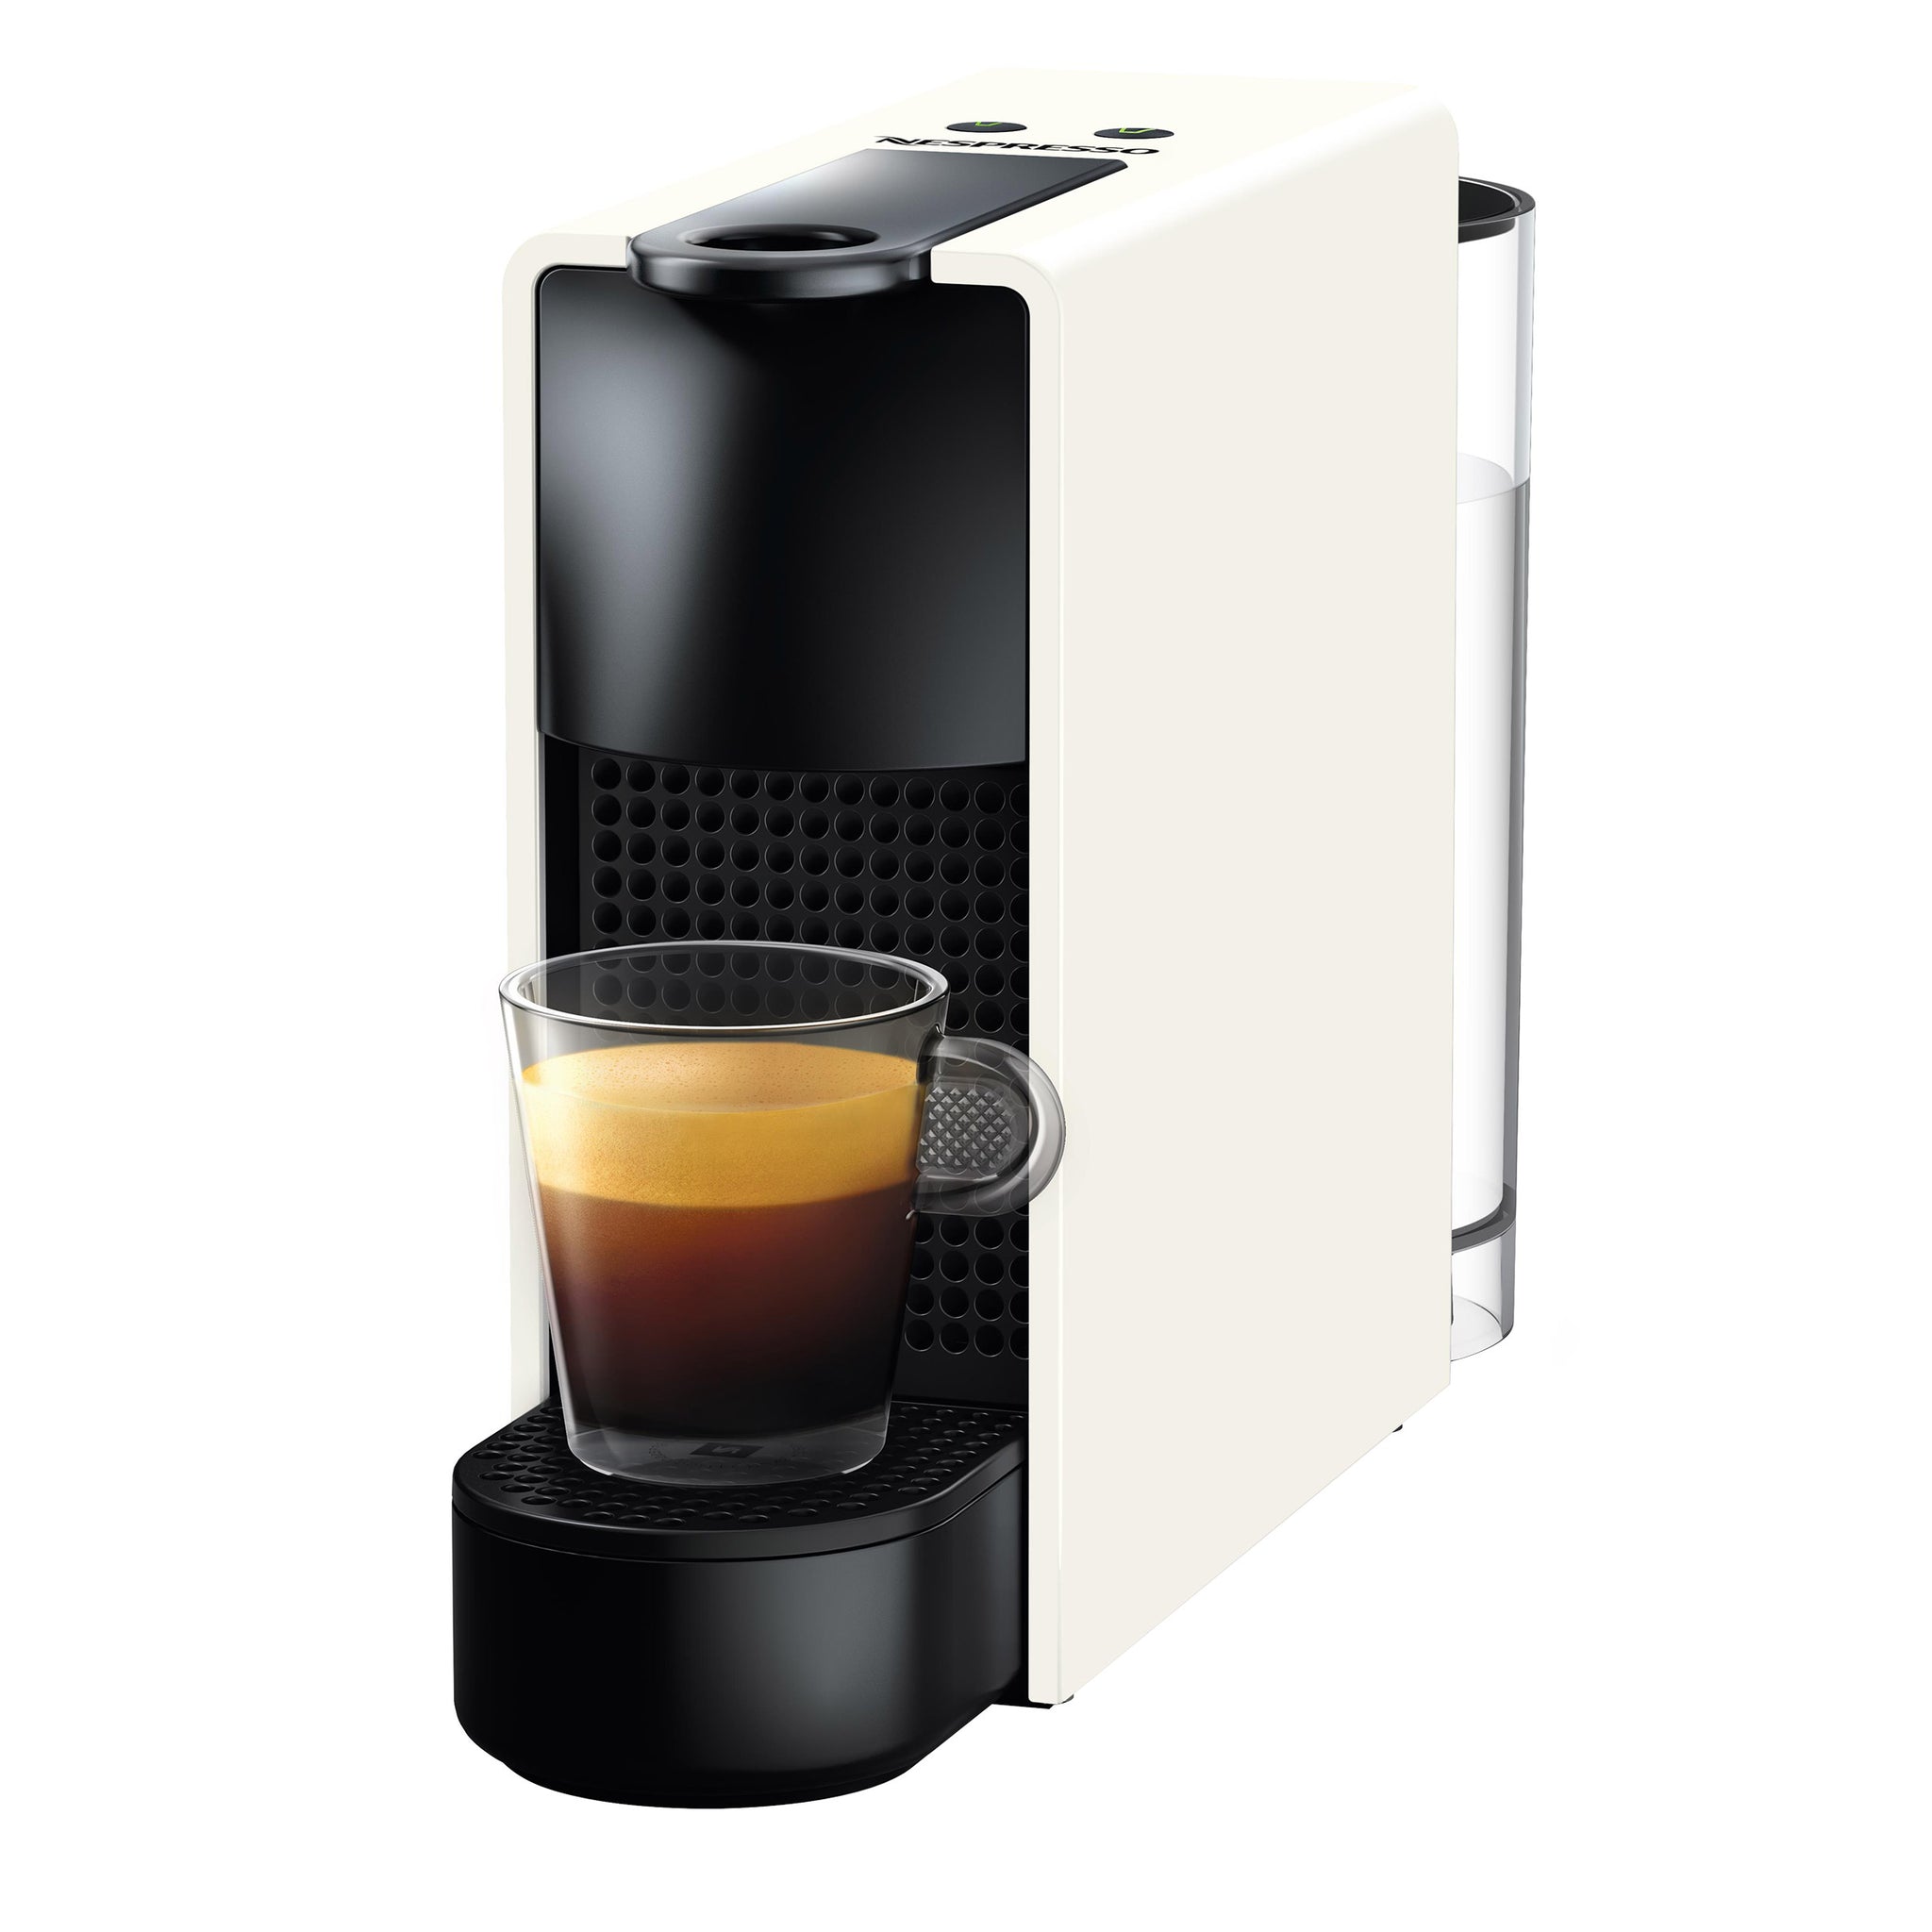 Nespresso by Breville Black Essenza Mini Espresso Machine + Reviews